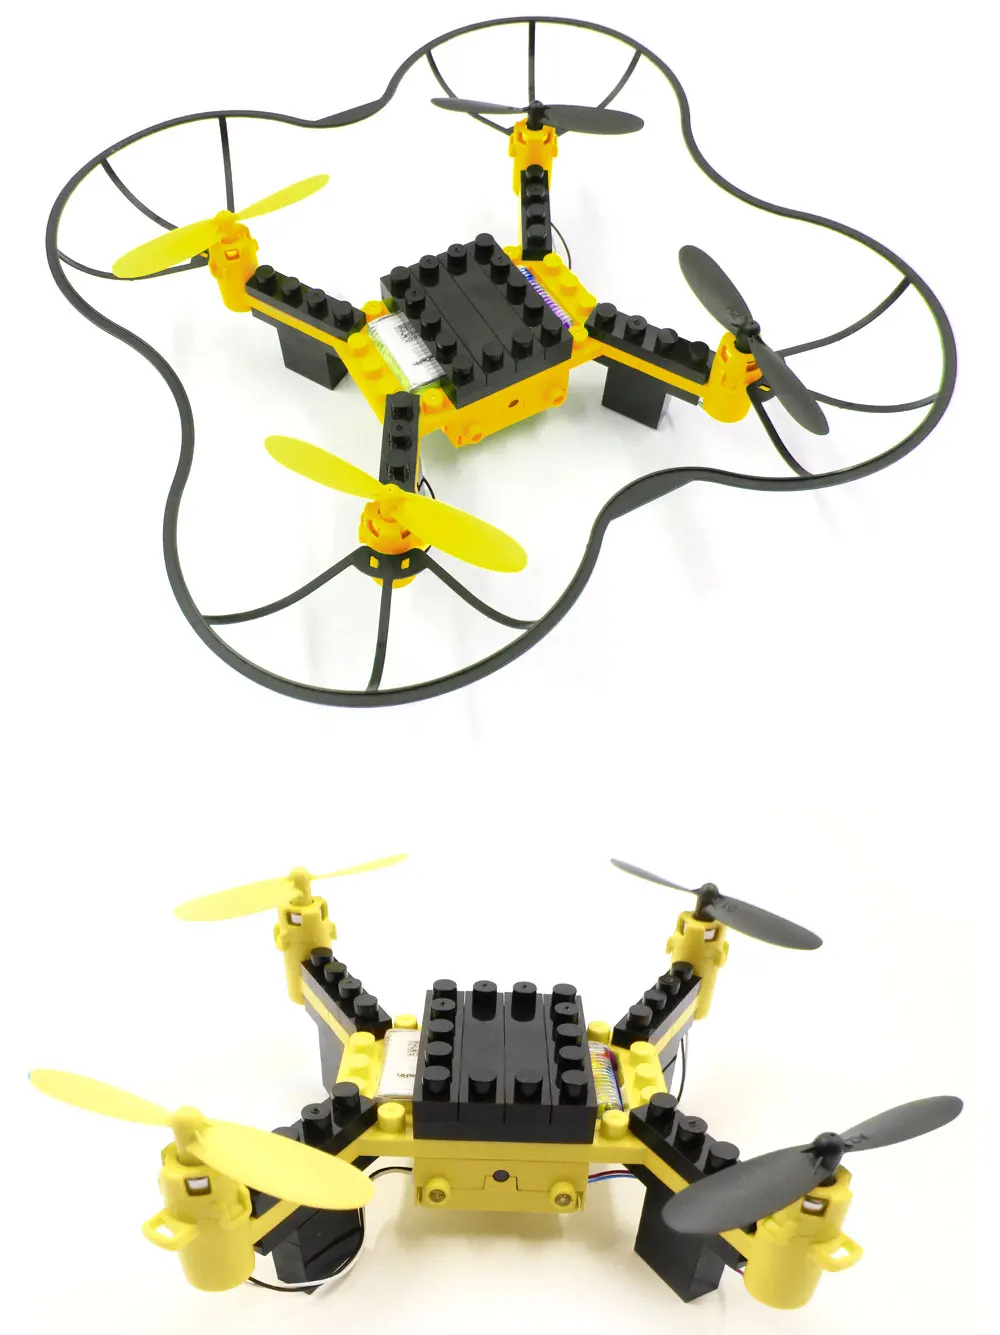 Flytec T11 DIY строительный блок Дрон вертолеты 2,4G 4CH мини дроны 3D DIY Кирпичи креативный Квадрокоптер DIY обучающая игрушка